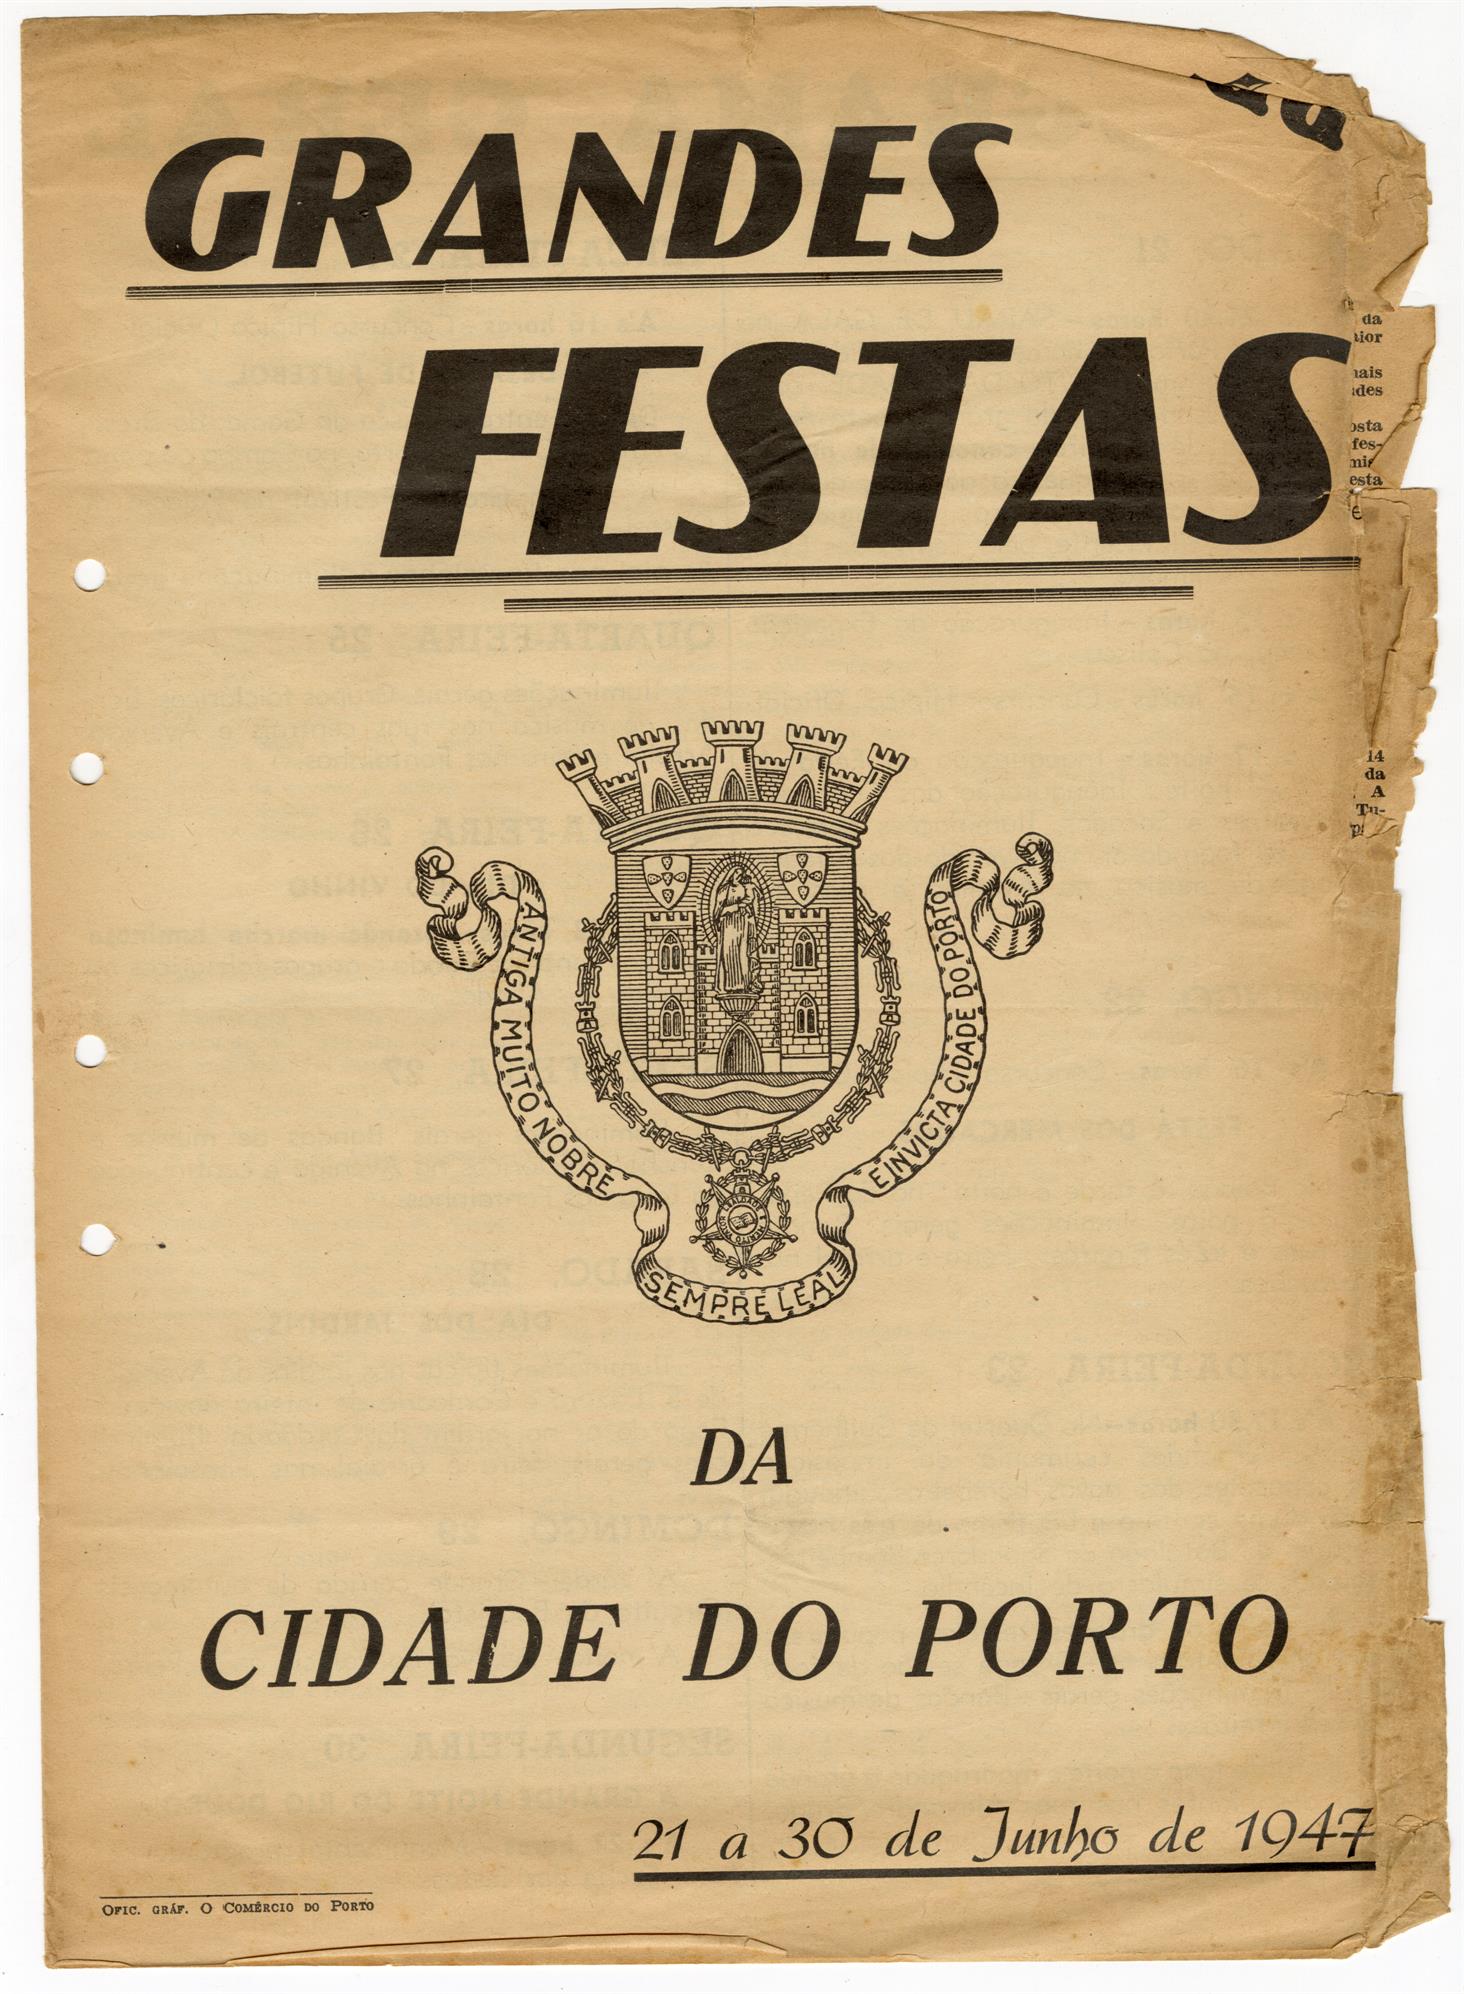 Festas da cidade, 1947 : programa